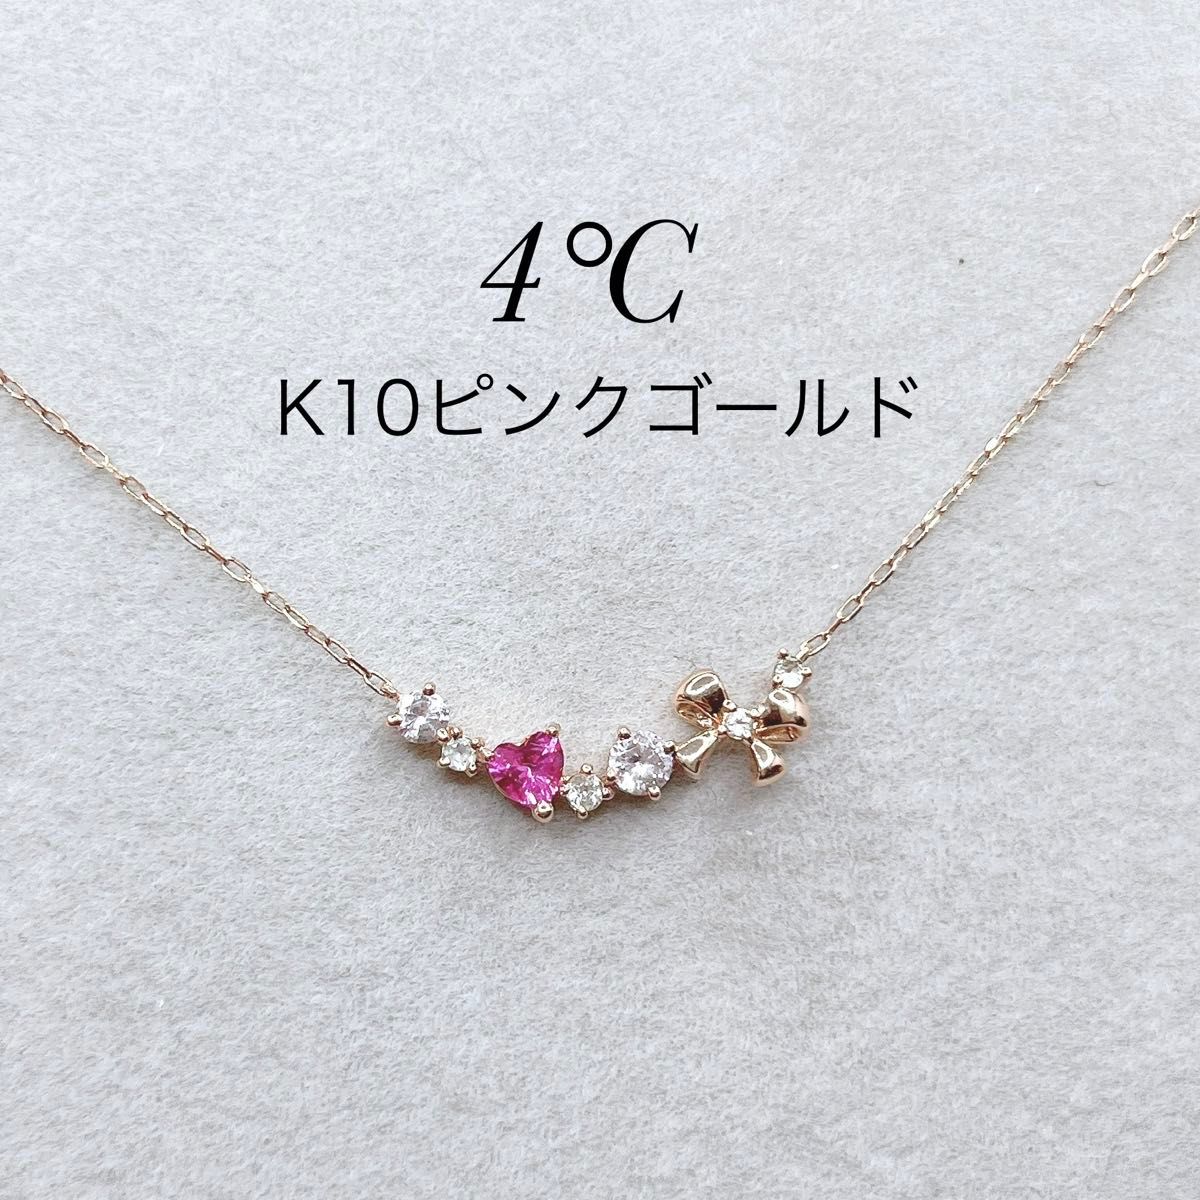 ヨンドシー K10PG ラインネックレス 天然石 ピンク ダイヤ 美品 ハート プレゼント